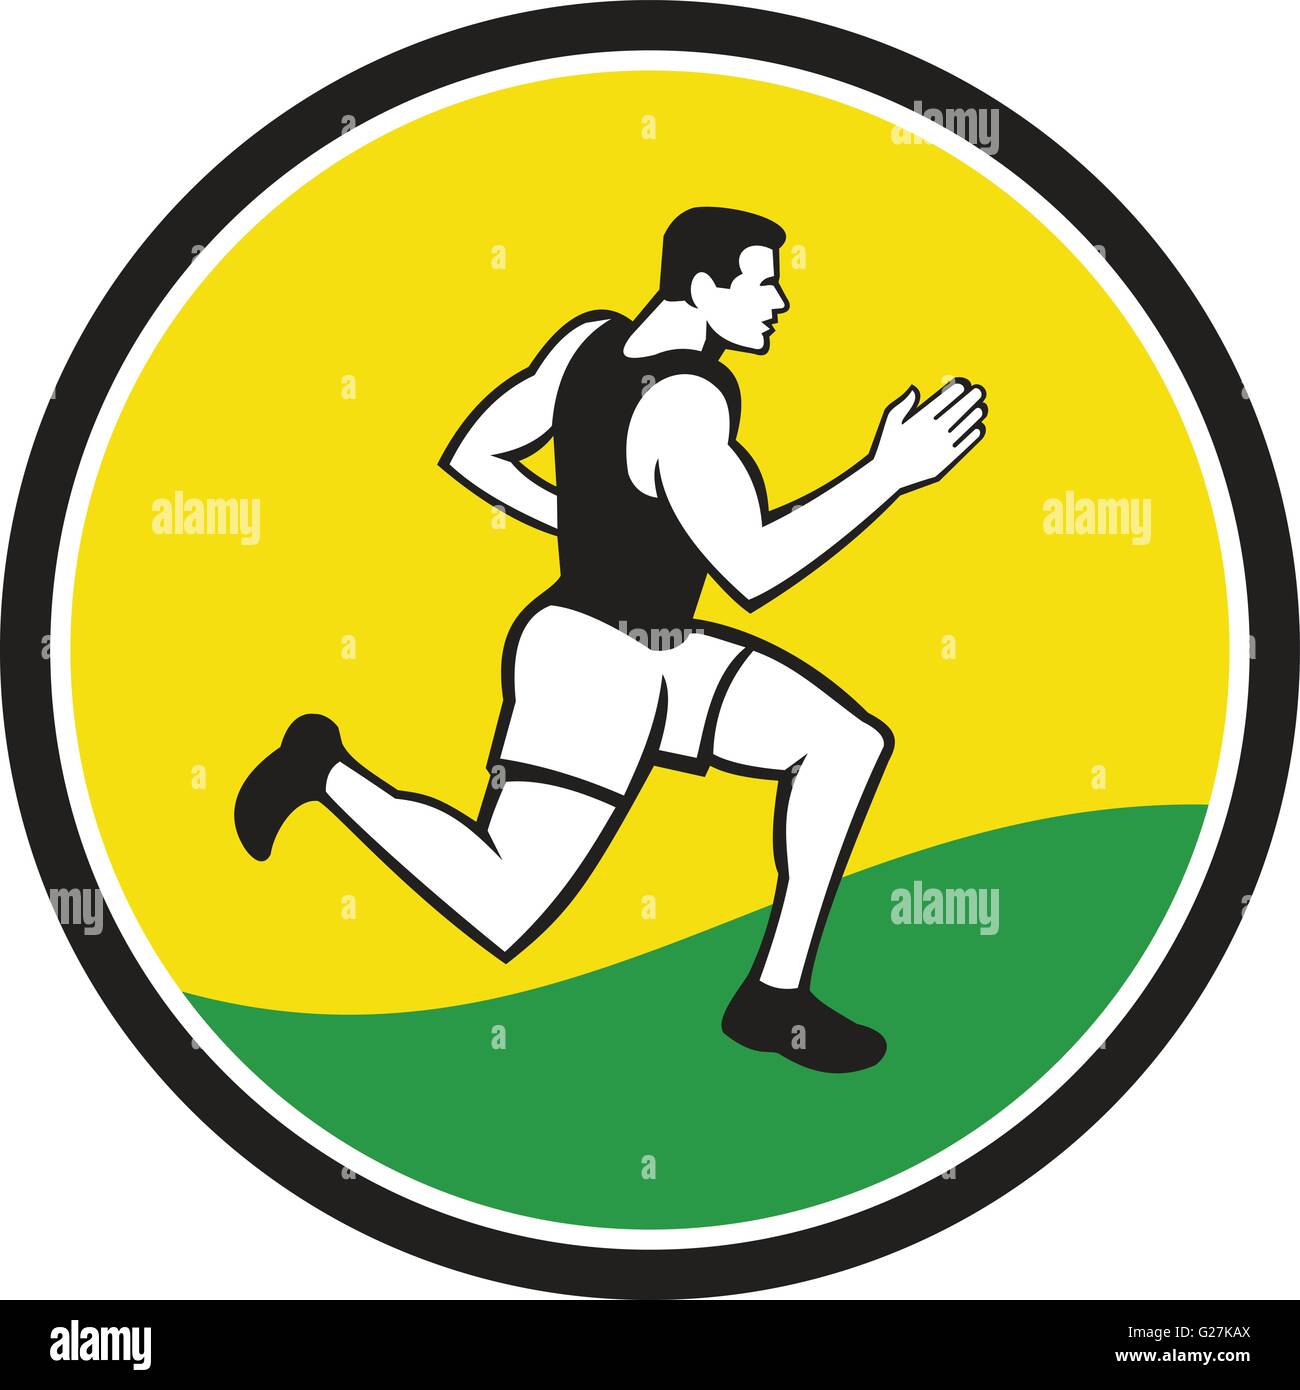 Illustrations de marathon masculin triathlète runner exécutant vu du côté situé à l'intérieur du cercle sur fond isolé fait en style rétro. Illustration de Vecteur